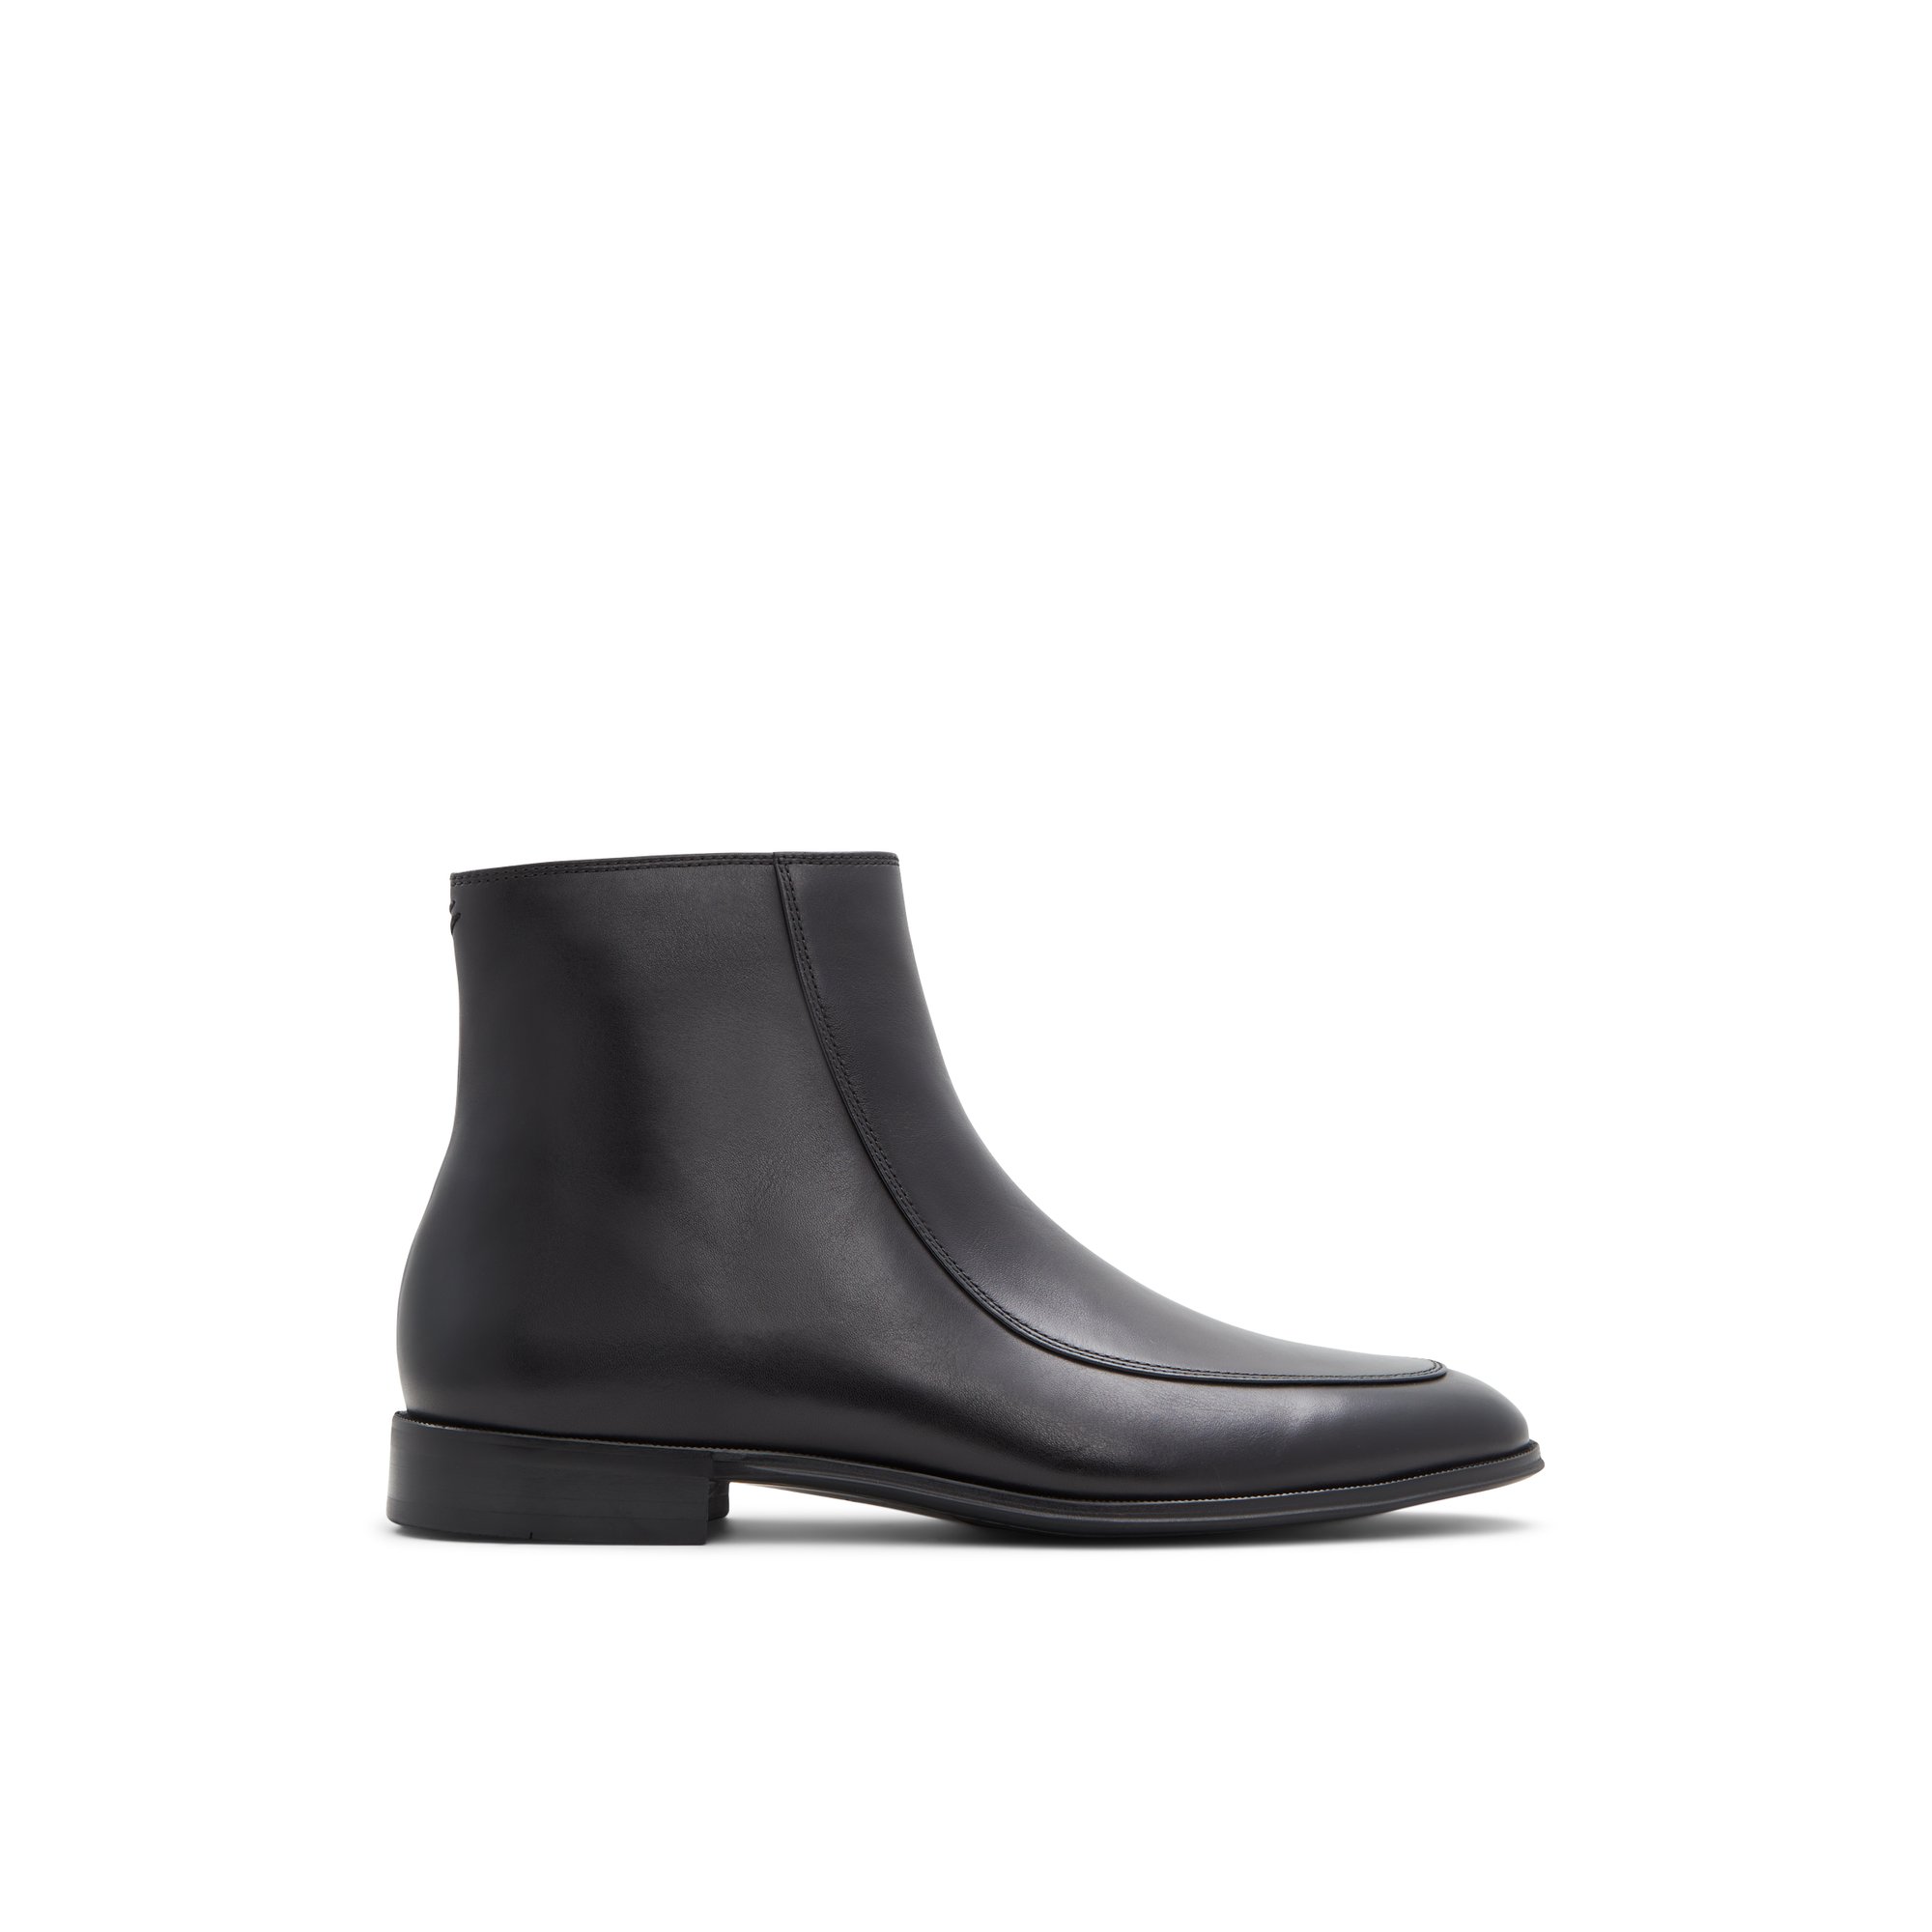 ALDO Corbero - Men's Dress Boot - Black